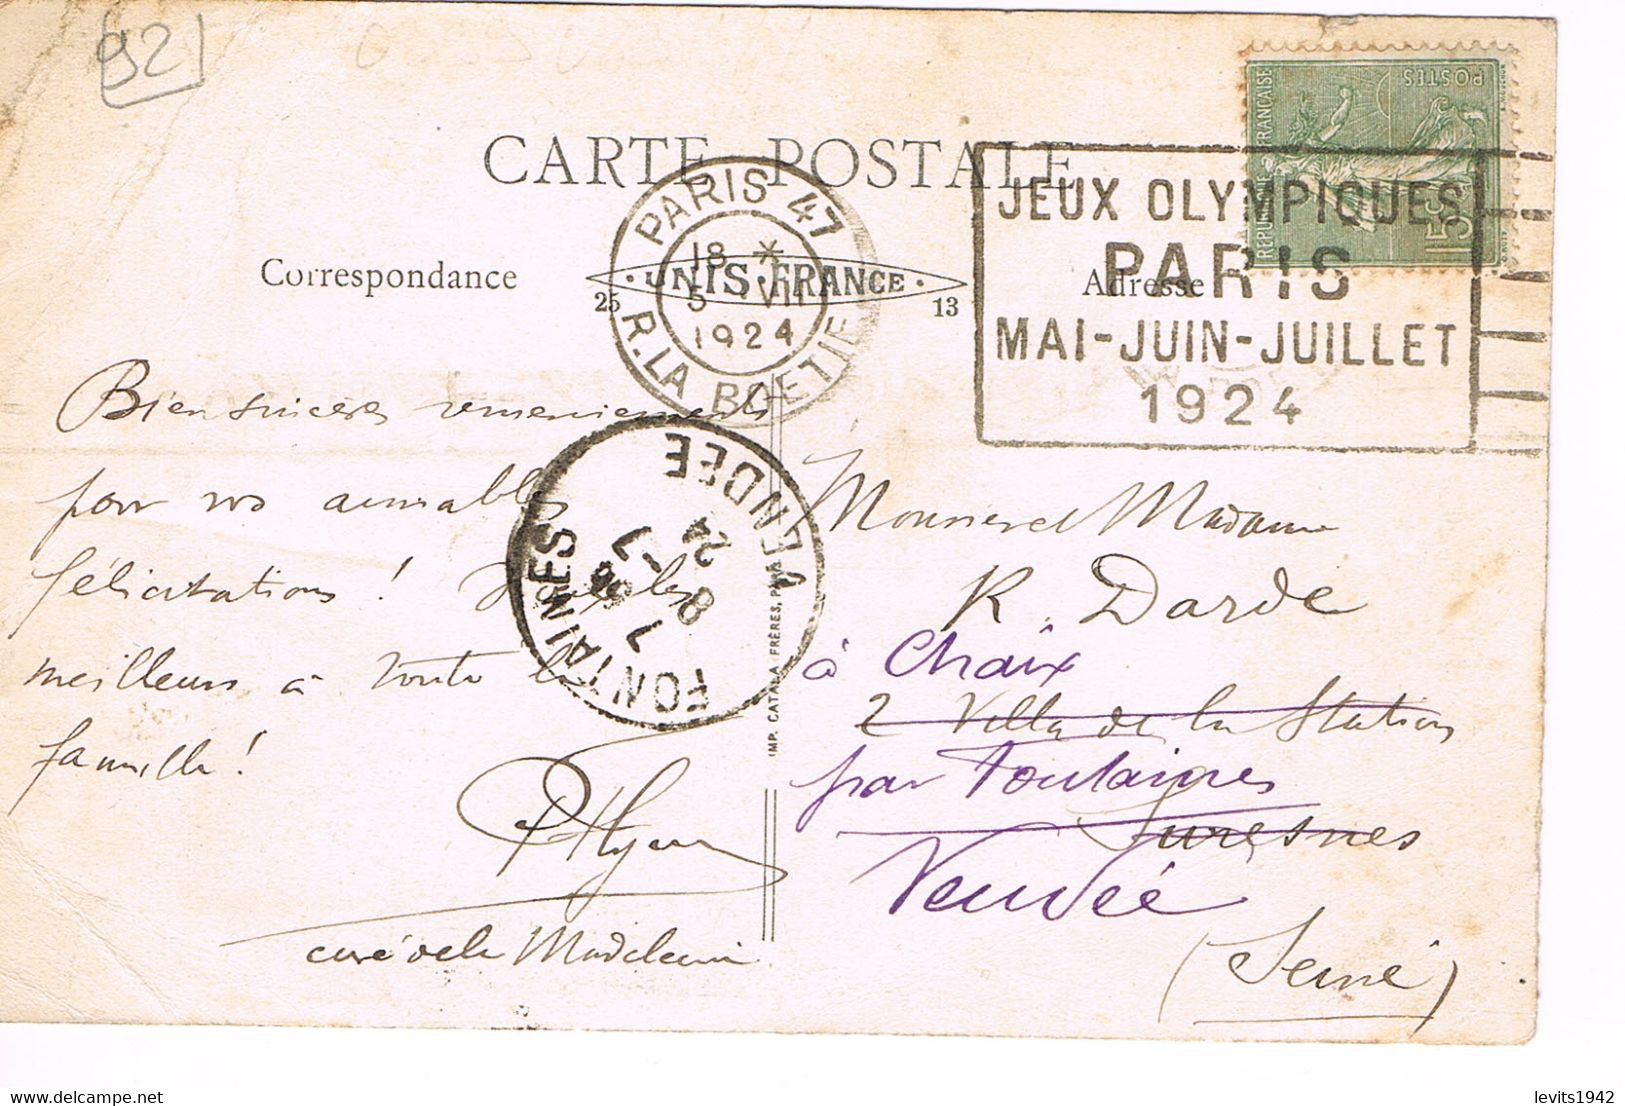 JEUX OLYMPIQUES 1924 -  MARQUE POSTALE -  POLO - JOUR DE COMPETITION - CEREMONIE D'OUVERTURE - 05-07 - - Ete 1924: Paris